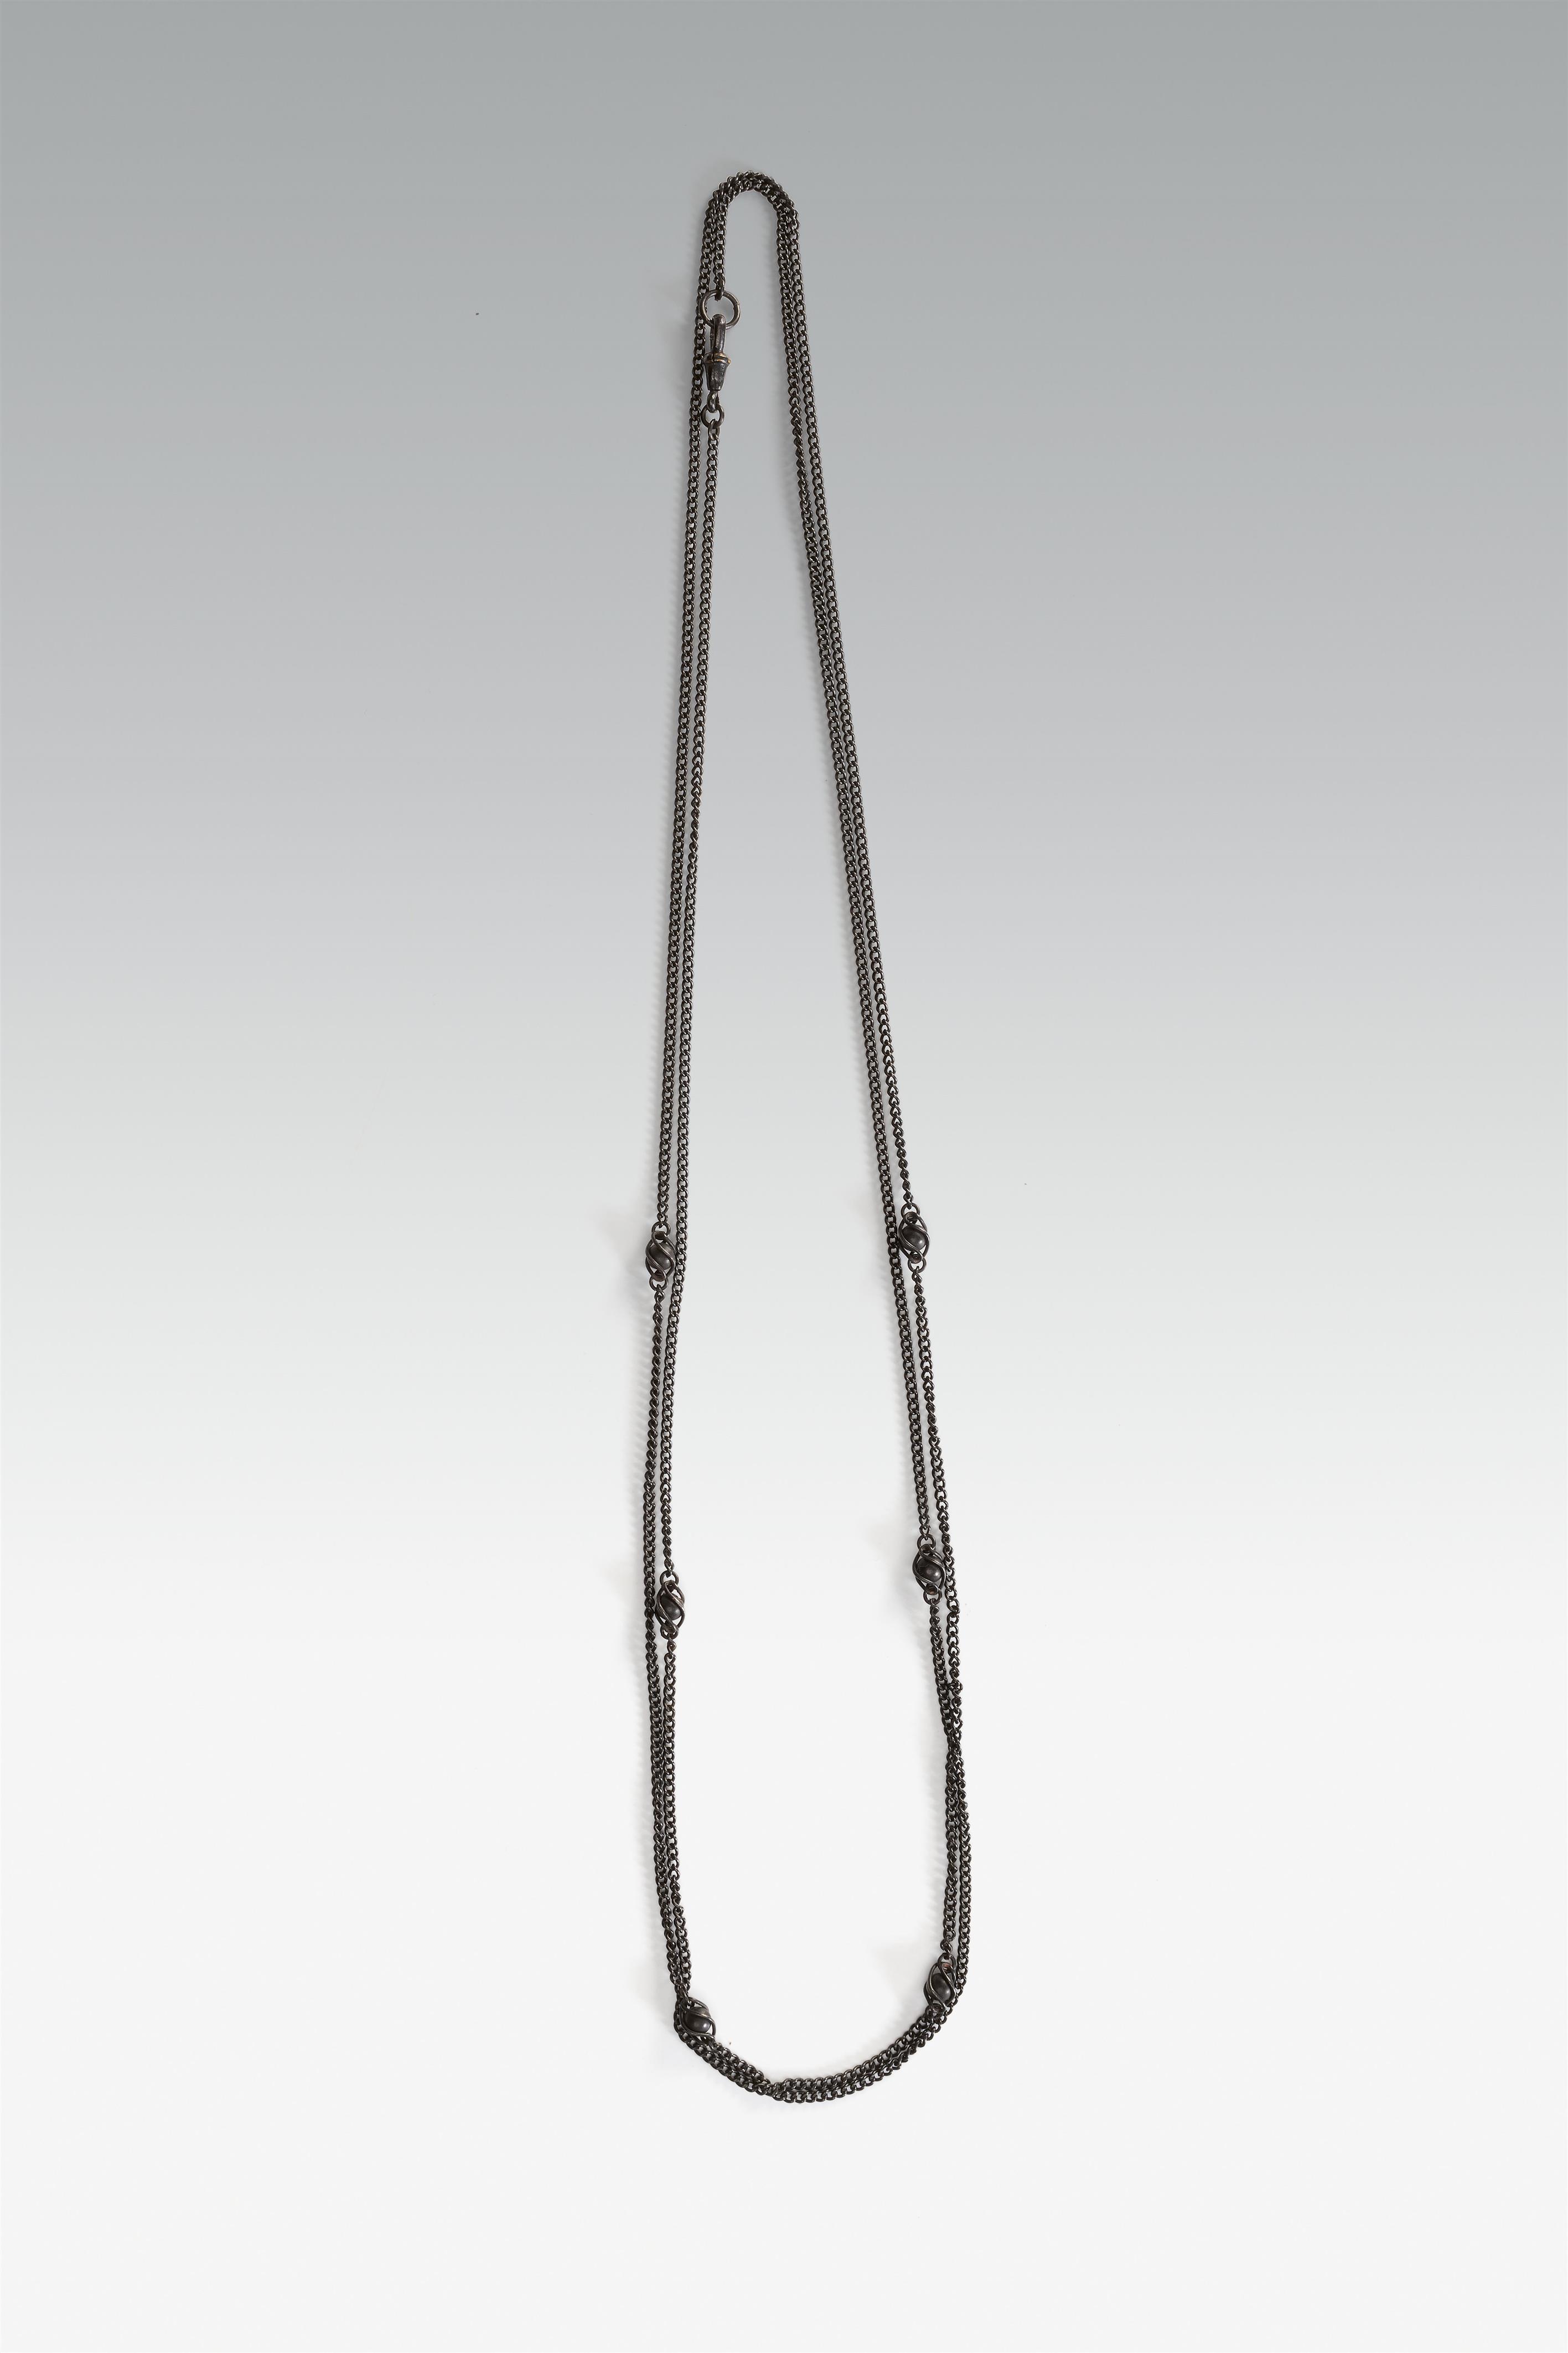 A cast iron necklace - image-1